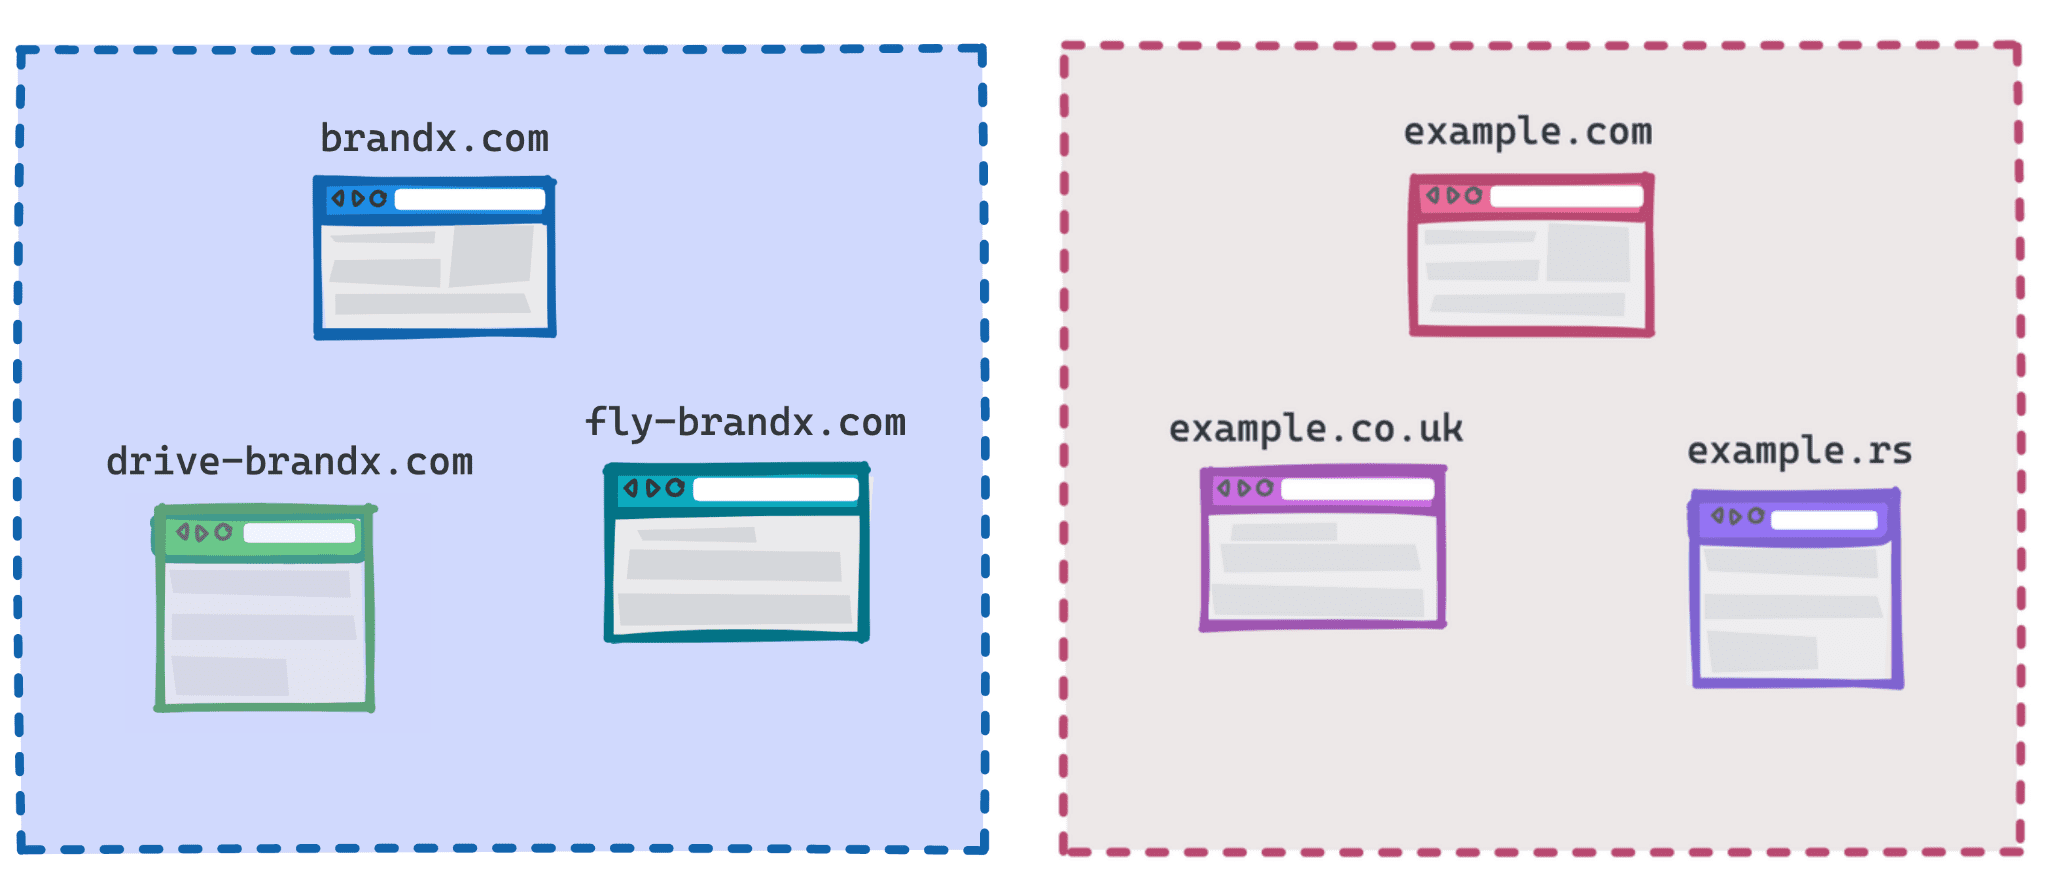 Diagramm mit brandx.com, fly-brandx.com und drive-brandx.com als eine Gruppe und example.com, example.rs, example.co.uk als weitere Gruppe.